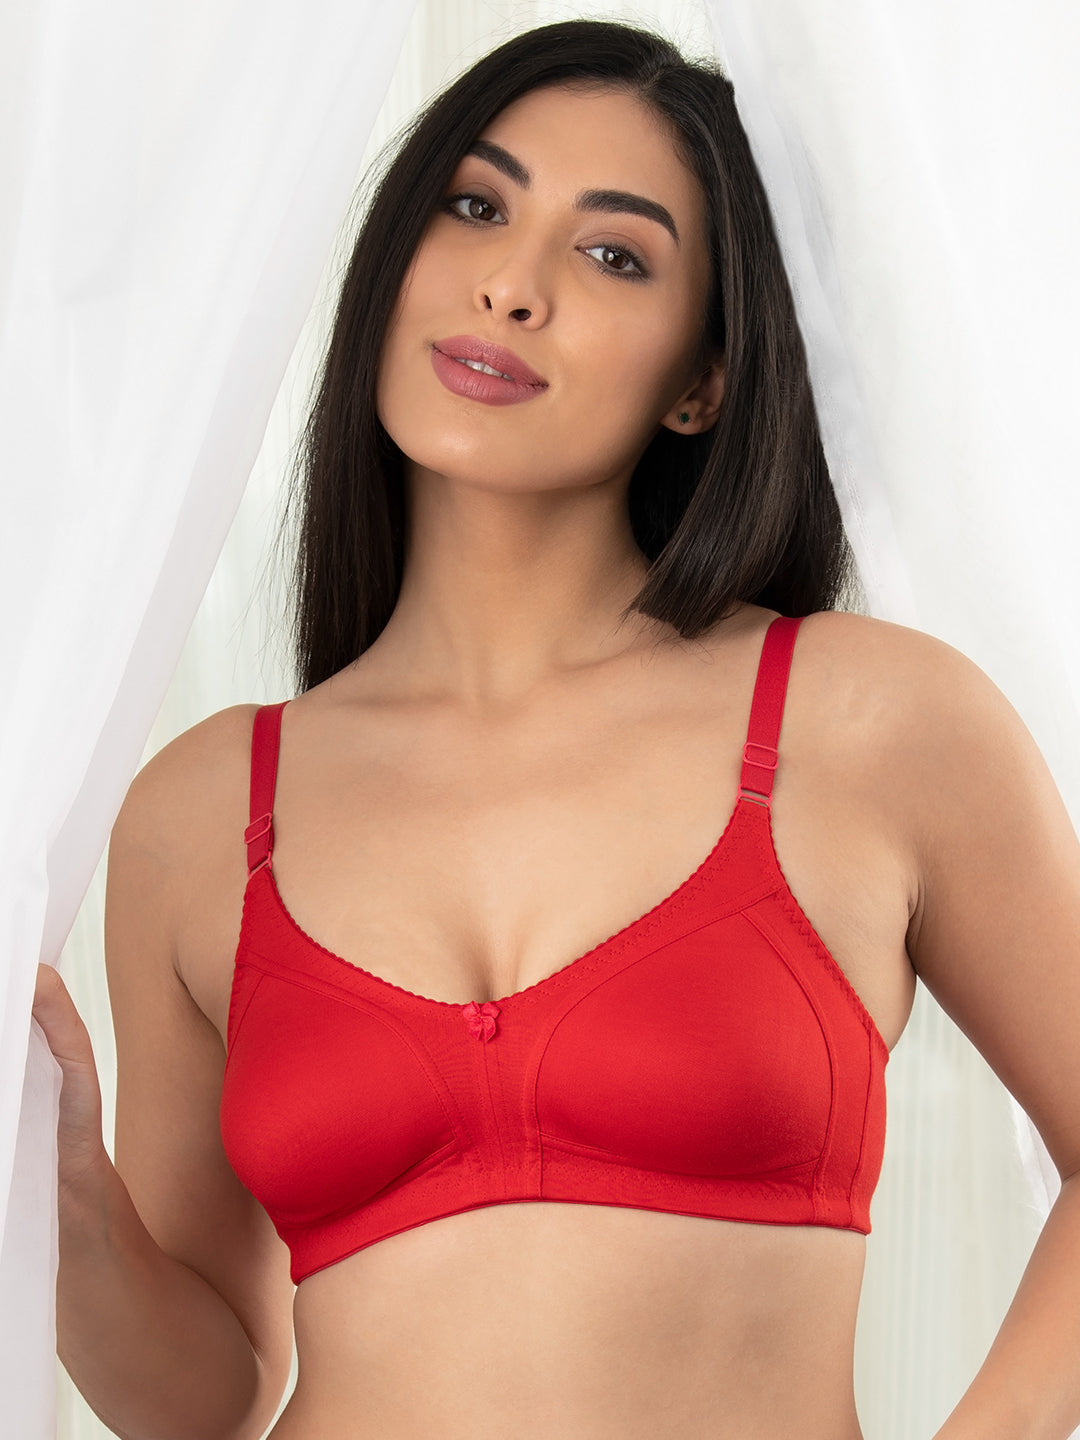 Kalyani pack of 2 bra with lace detailing 5027 – kalyaniinnerwear